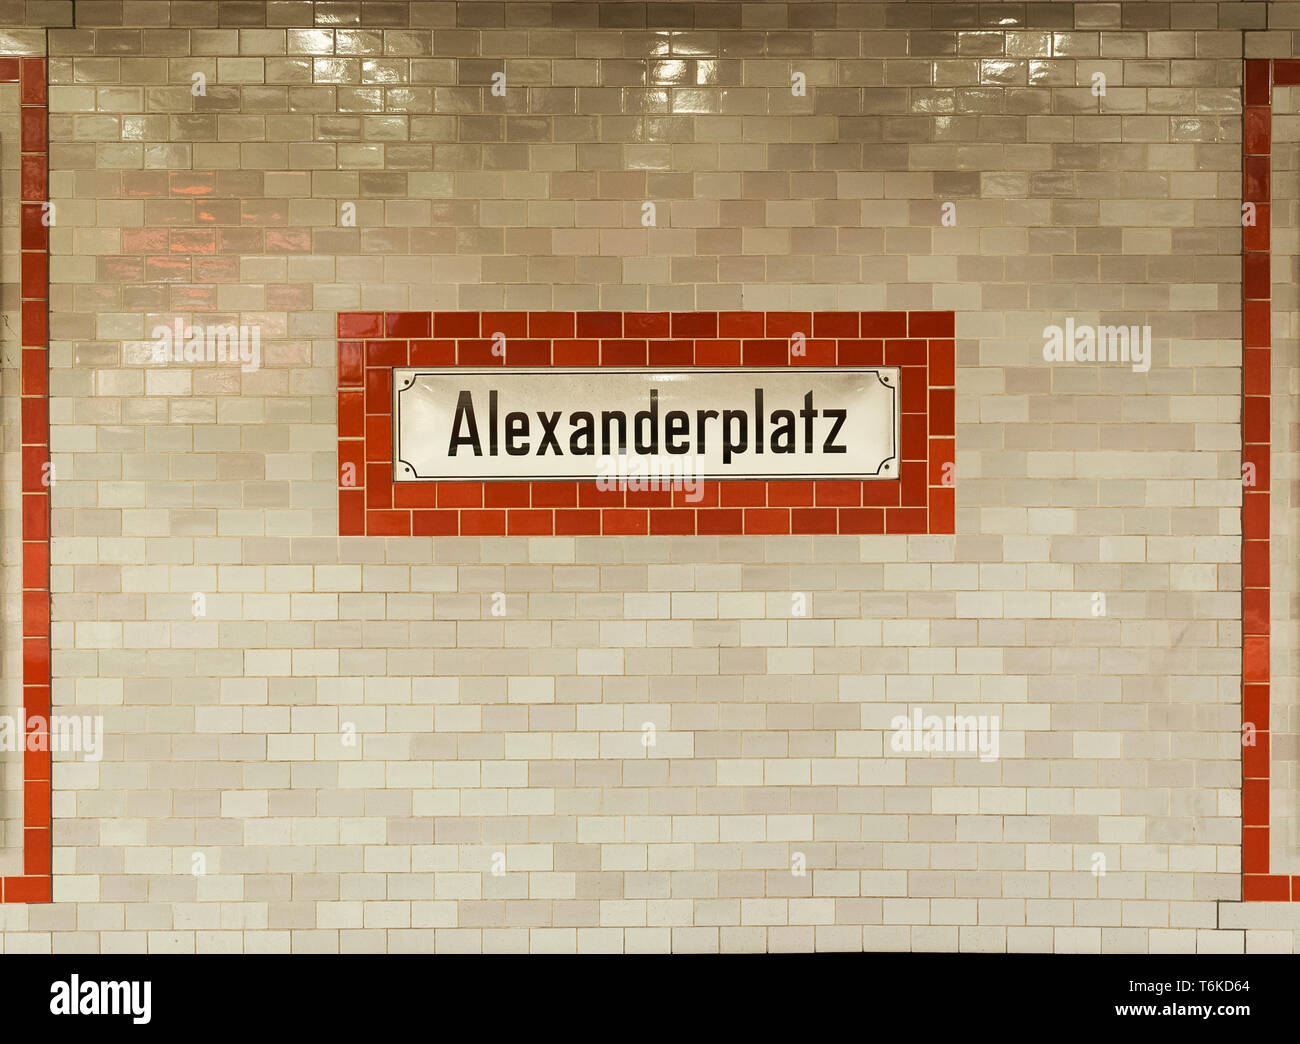 Alte Zeichen der Alexanderplatz U-Bahn U-Bahn / U-Bahn Station in Berlin, Deutschland, auf eine Kachel Wand, gesehen von der Vorderseite. Stockfoto